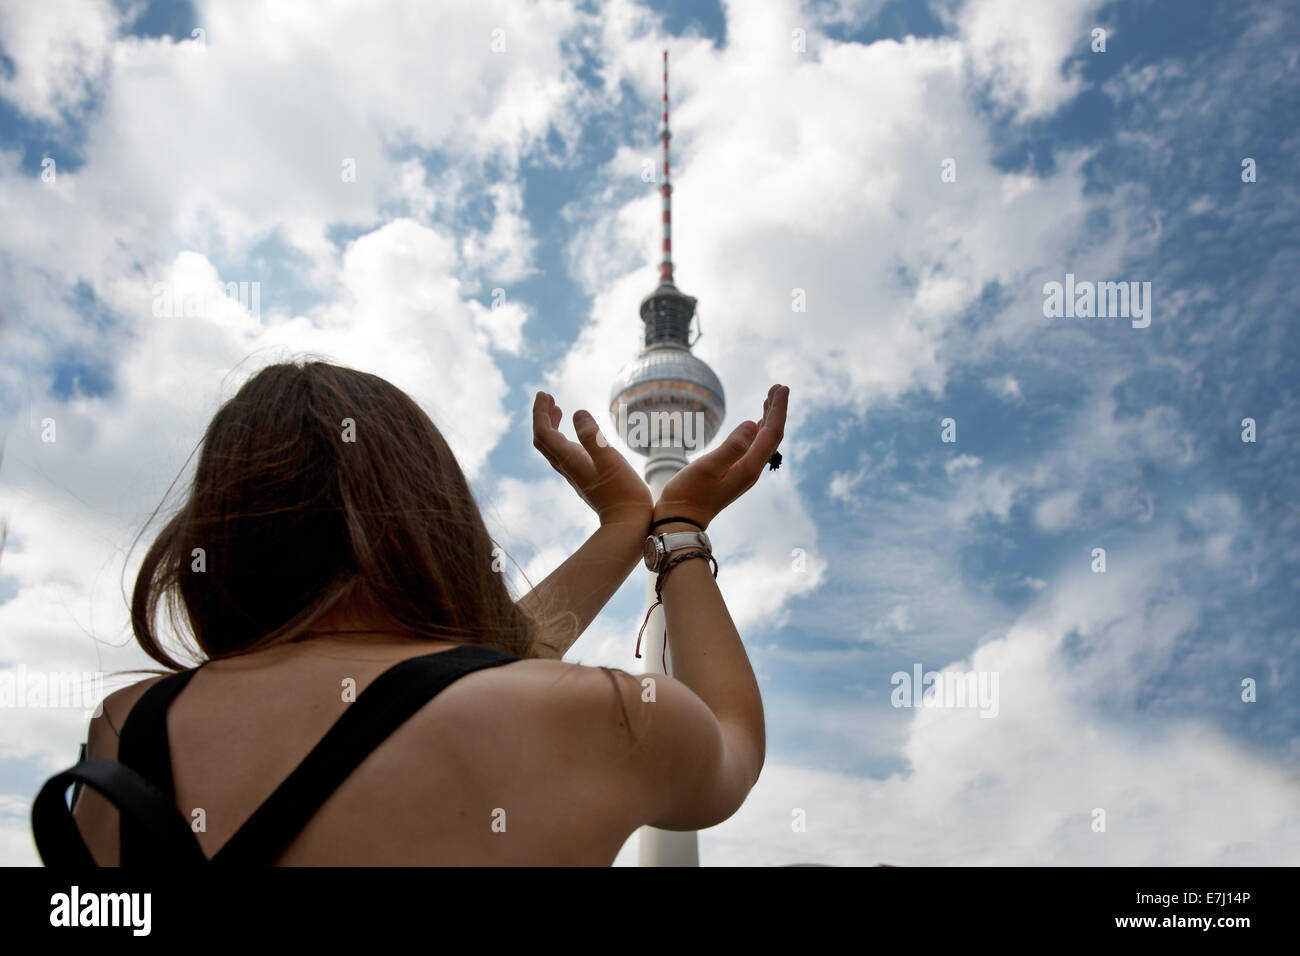 Der Fernsehturm am Alexanderplatz, Berlin, Deutschland. Stockfoto